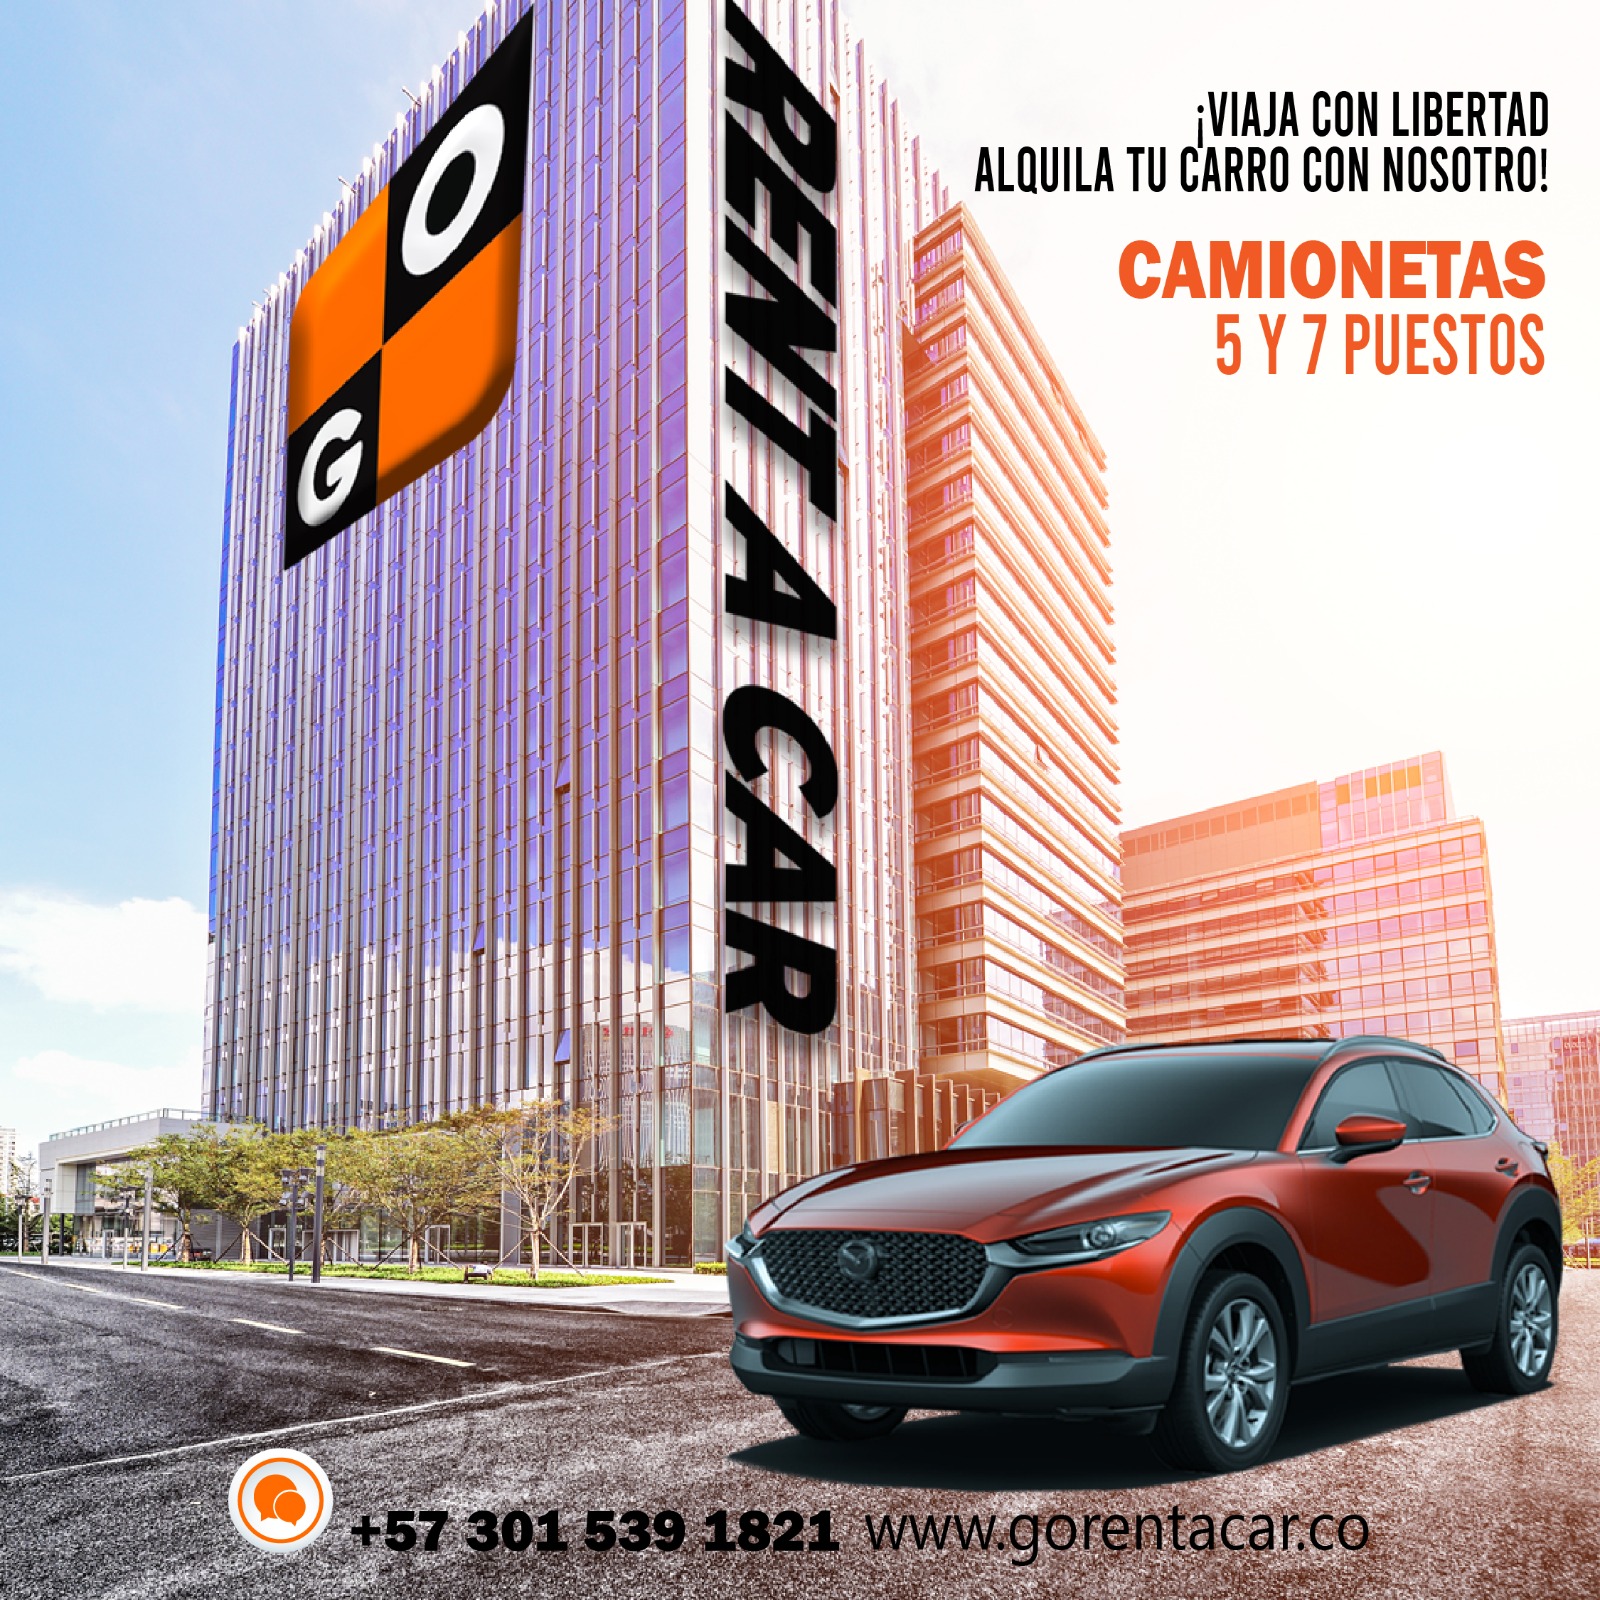 Alquiler de Carros en Medellín